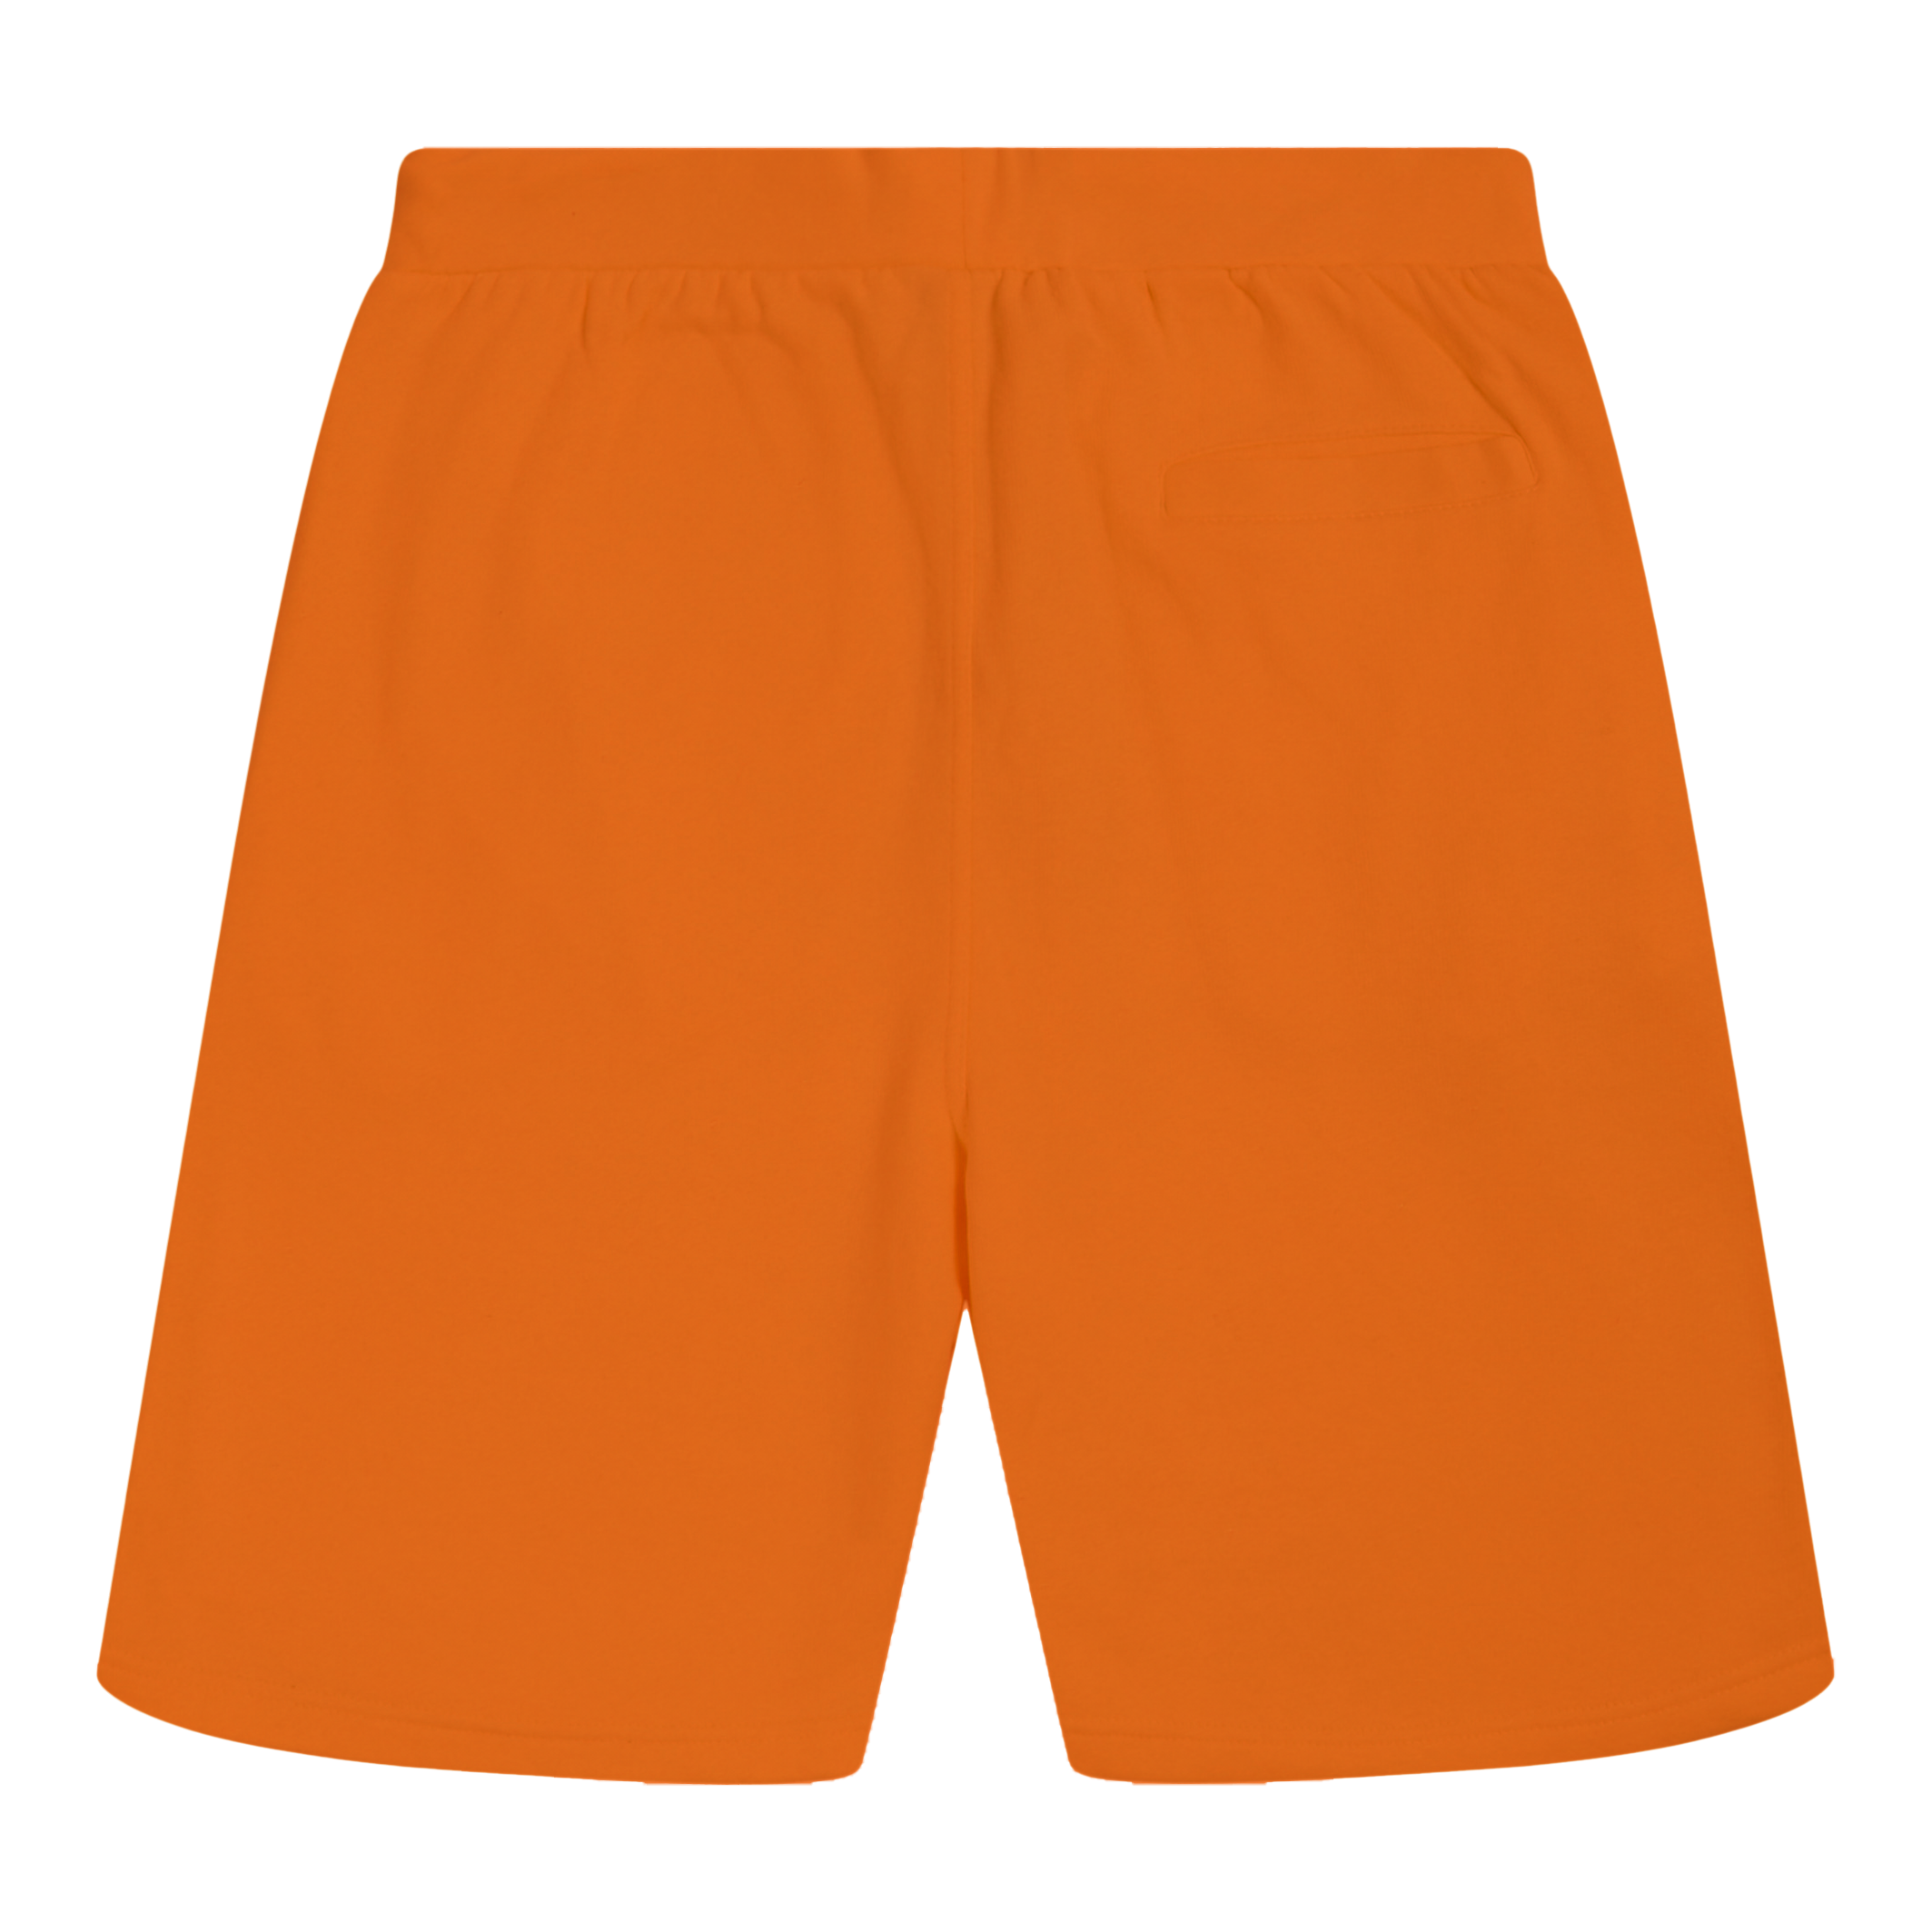 Essential Short - Orange